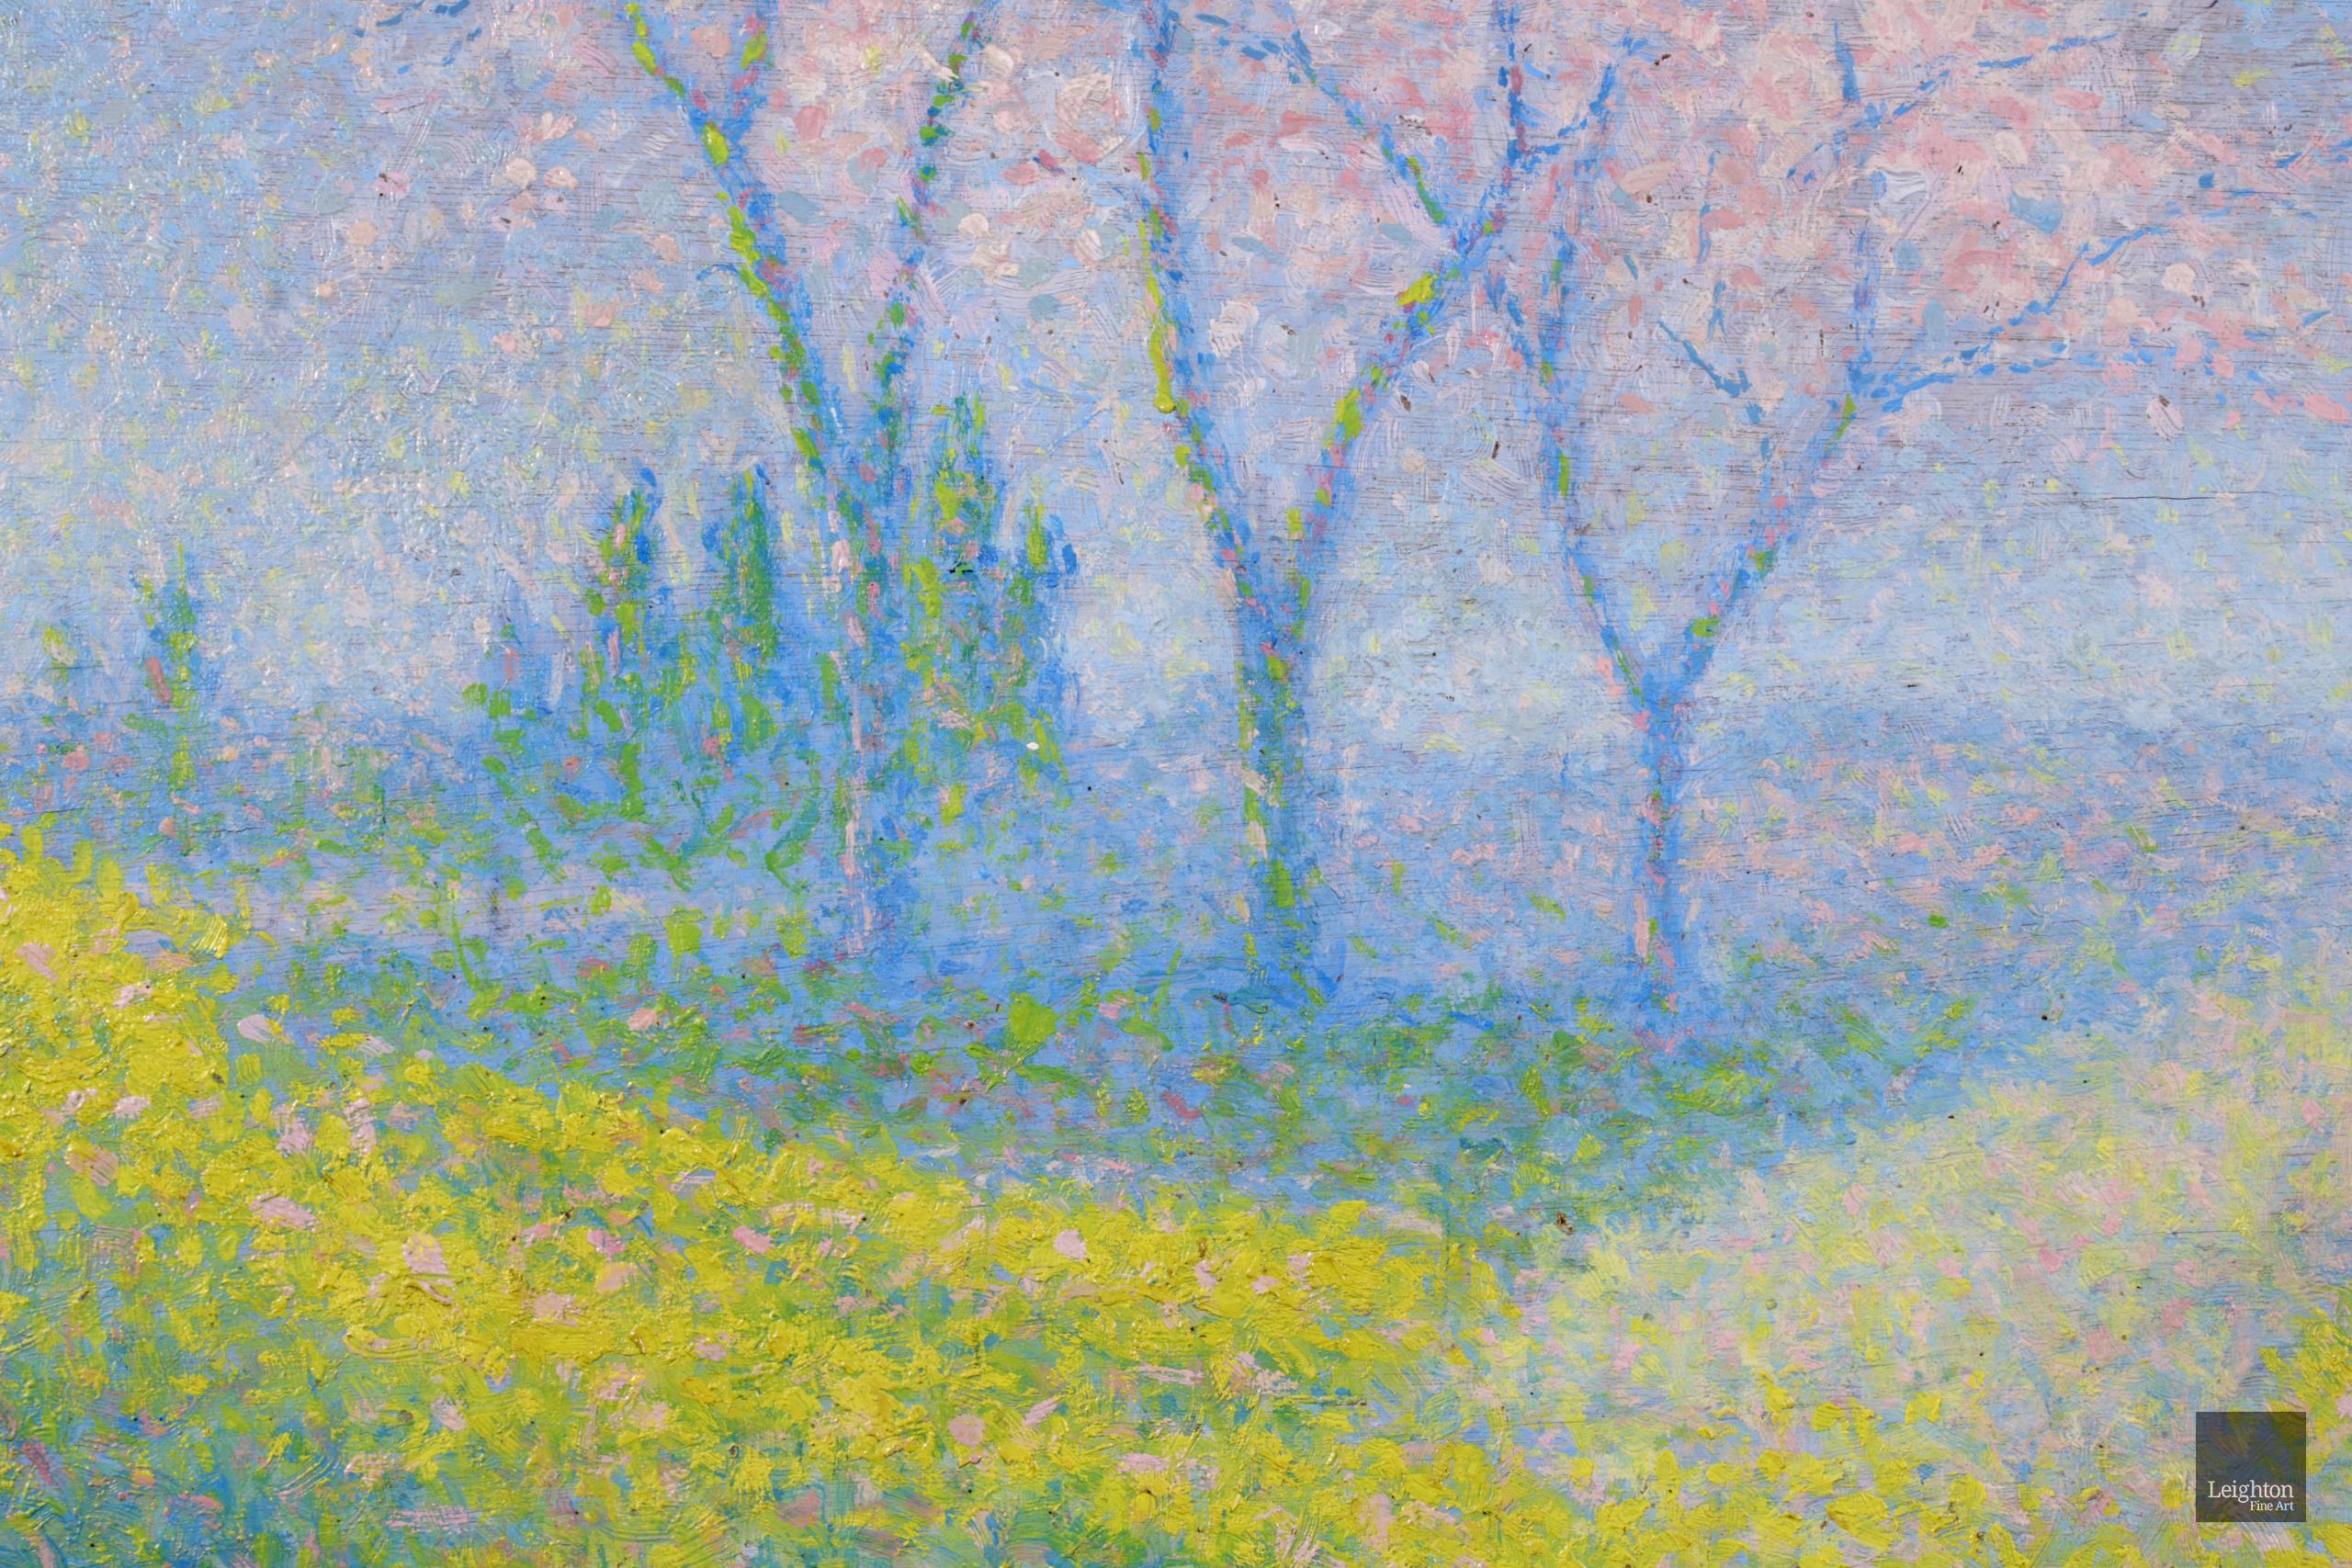 Superbe paysage pointilliste à l'huile sur panneau vers 1920 par le peintre néo-impressionniste français Achille Lauge. L'œuvre représente un paysage printanier. Au centre se trouvent trois grands arbres couverts de fleurs blanches et roses. Les